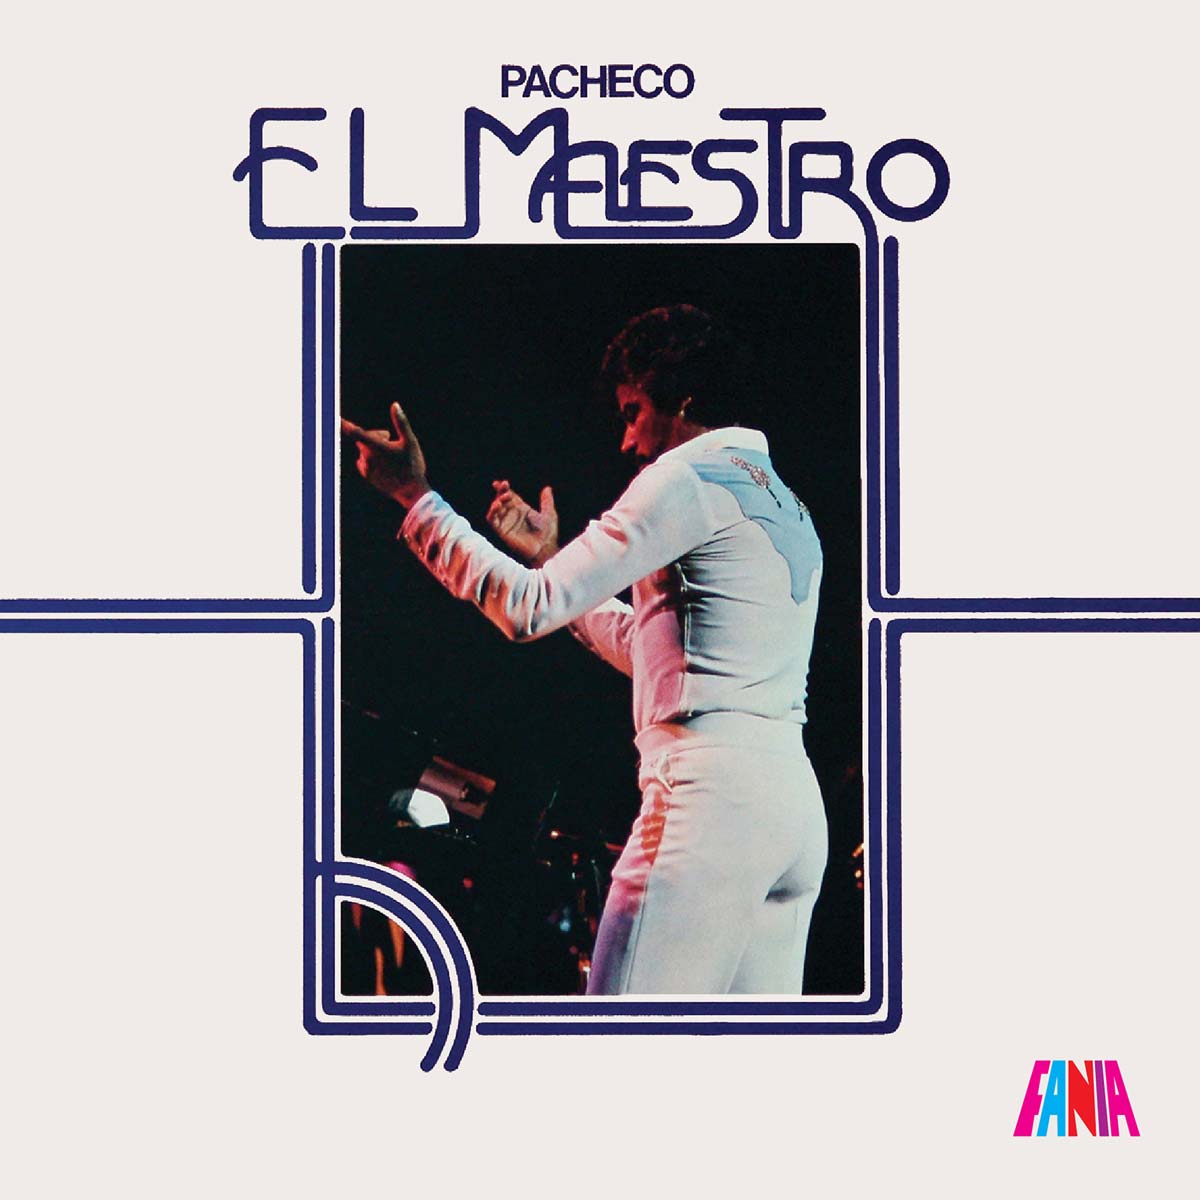 Featured Image for “EL MAESTRO”